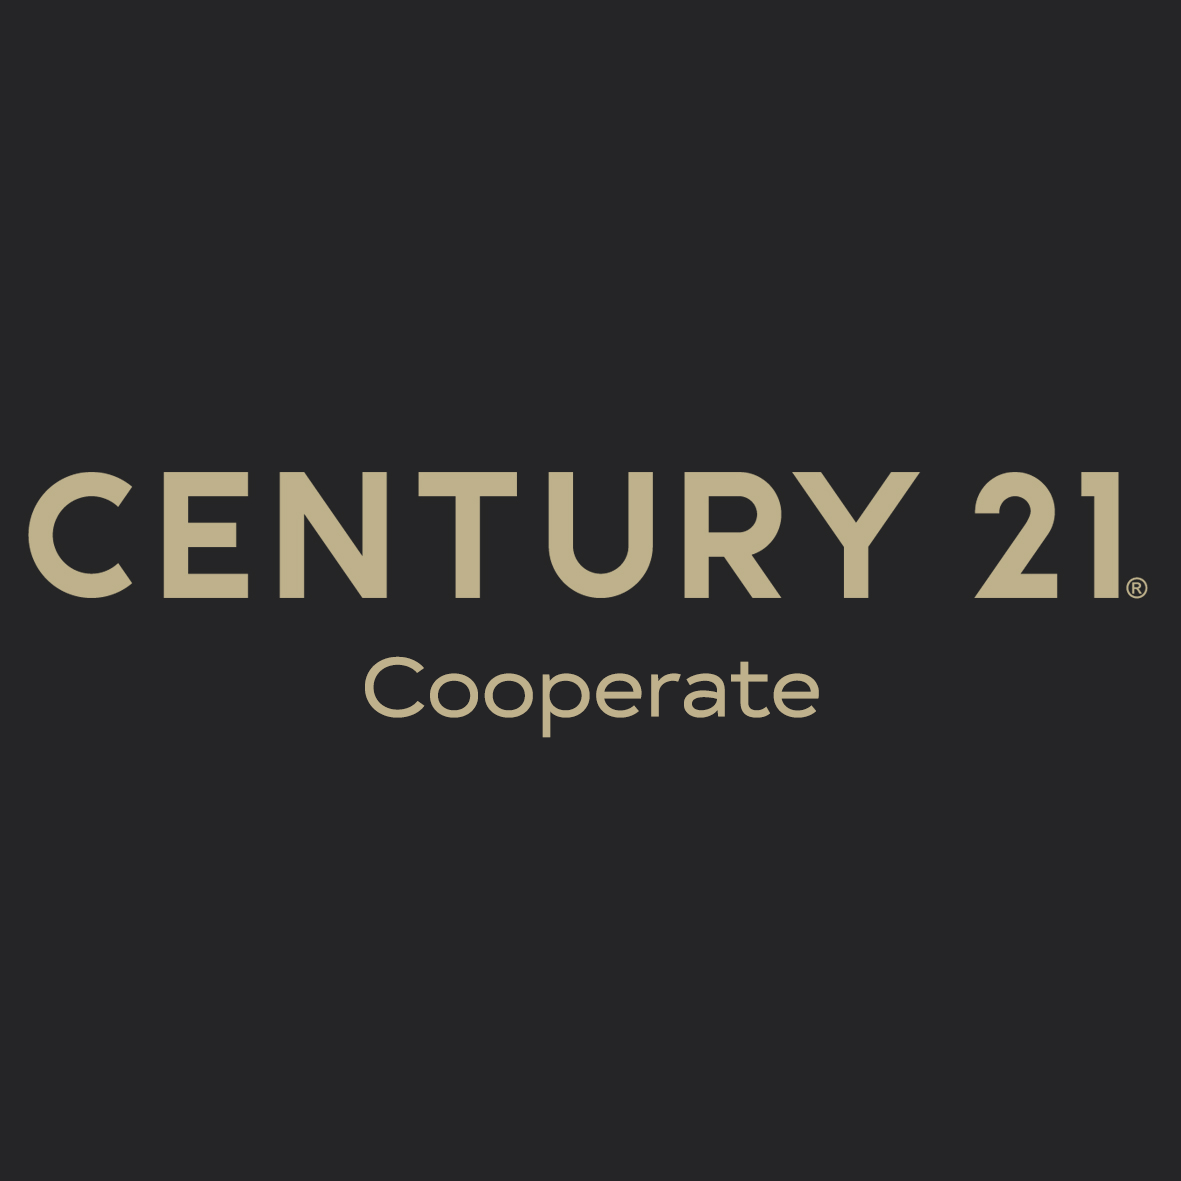 CENTURY 21 Cooperate